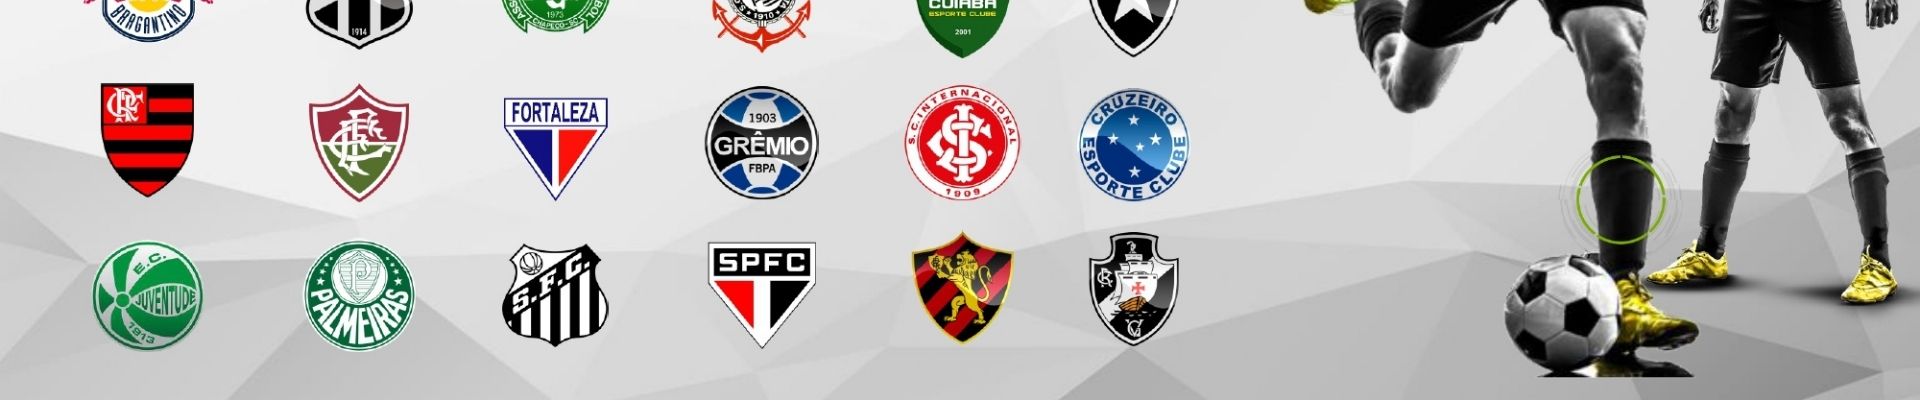 IBOPE | Confira o Mapa do patrocínio de uniformes de futebol no Brasil em 2021